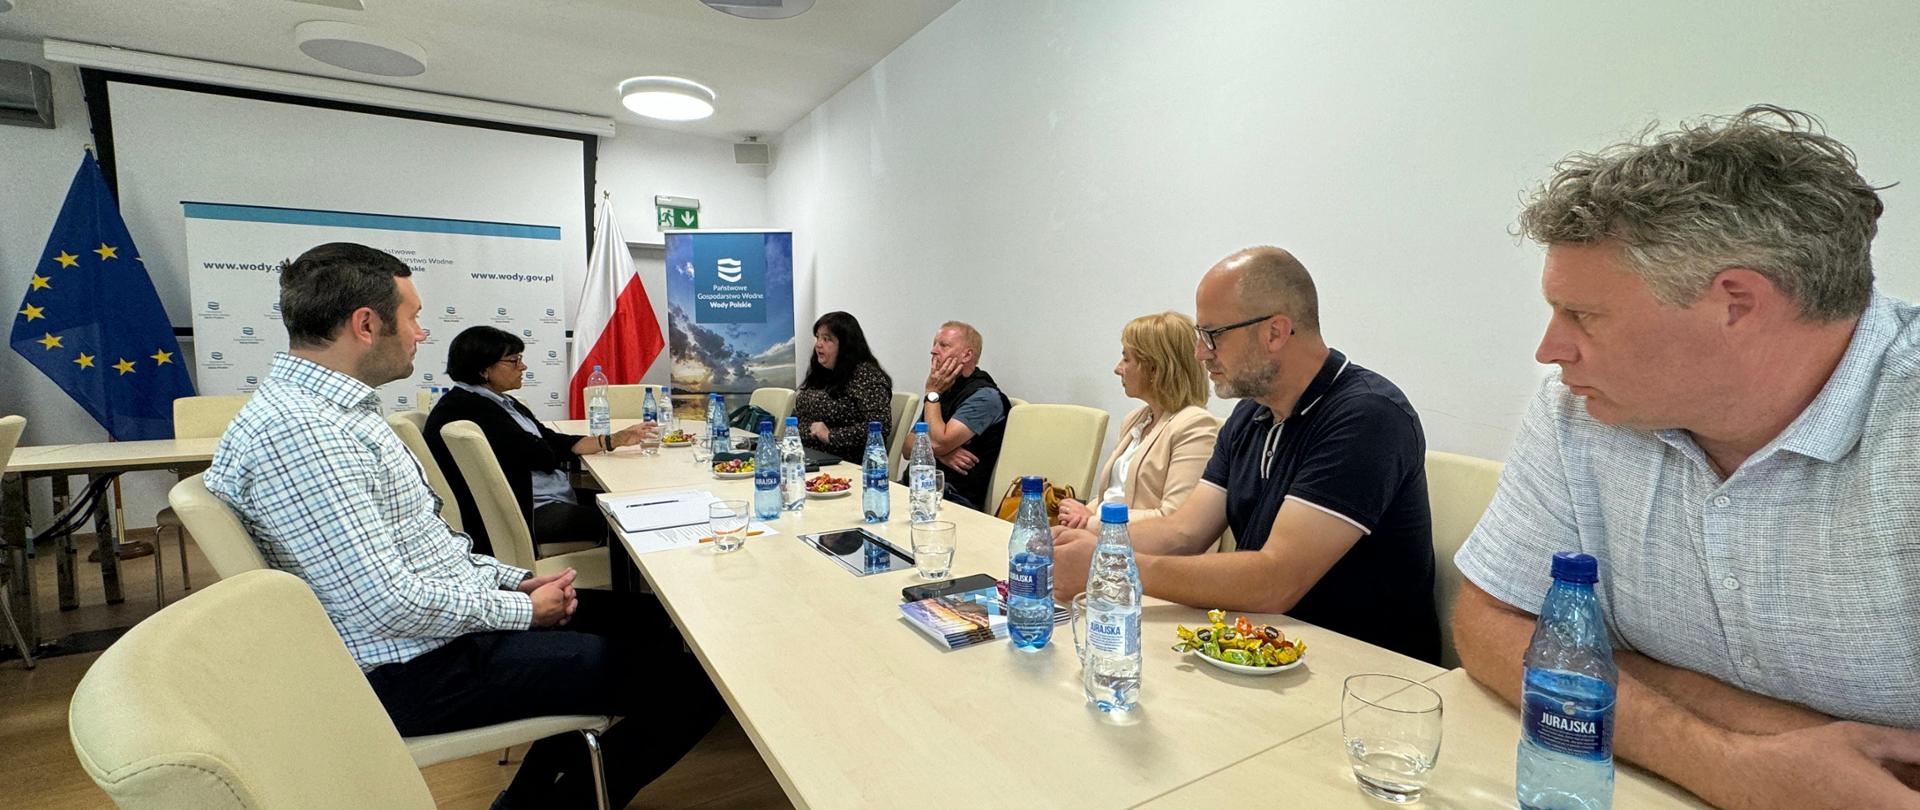 Spotkanie z przedstawicielami organizacji społecznych i ekologicznych w siedzibie RZGW we Wrocławiu.